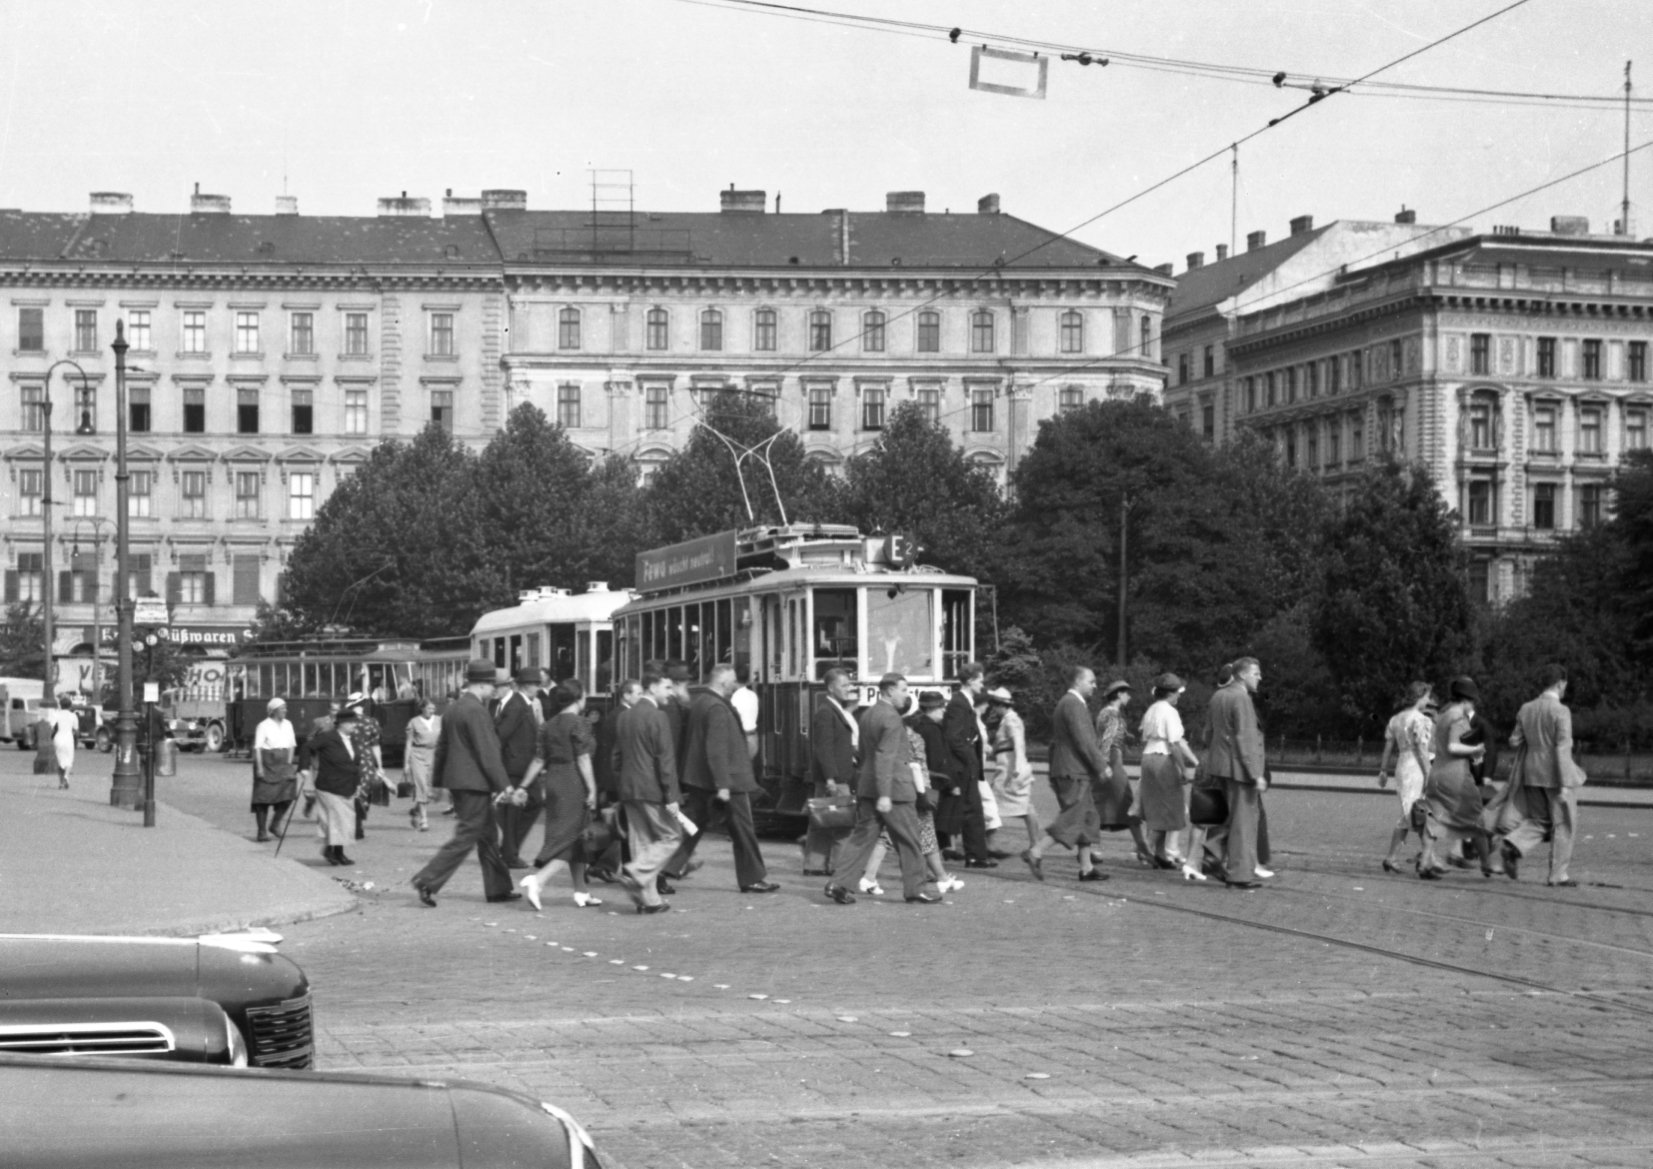 Verkehrssituation am Karlsplatz mit einem Zug der Linie E2 mit Wagen Typen G2-m3 etwa 1952, Personen gehen über Kreuzung